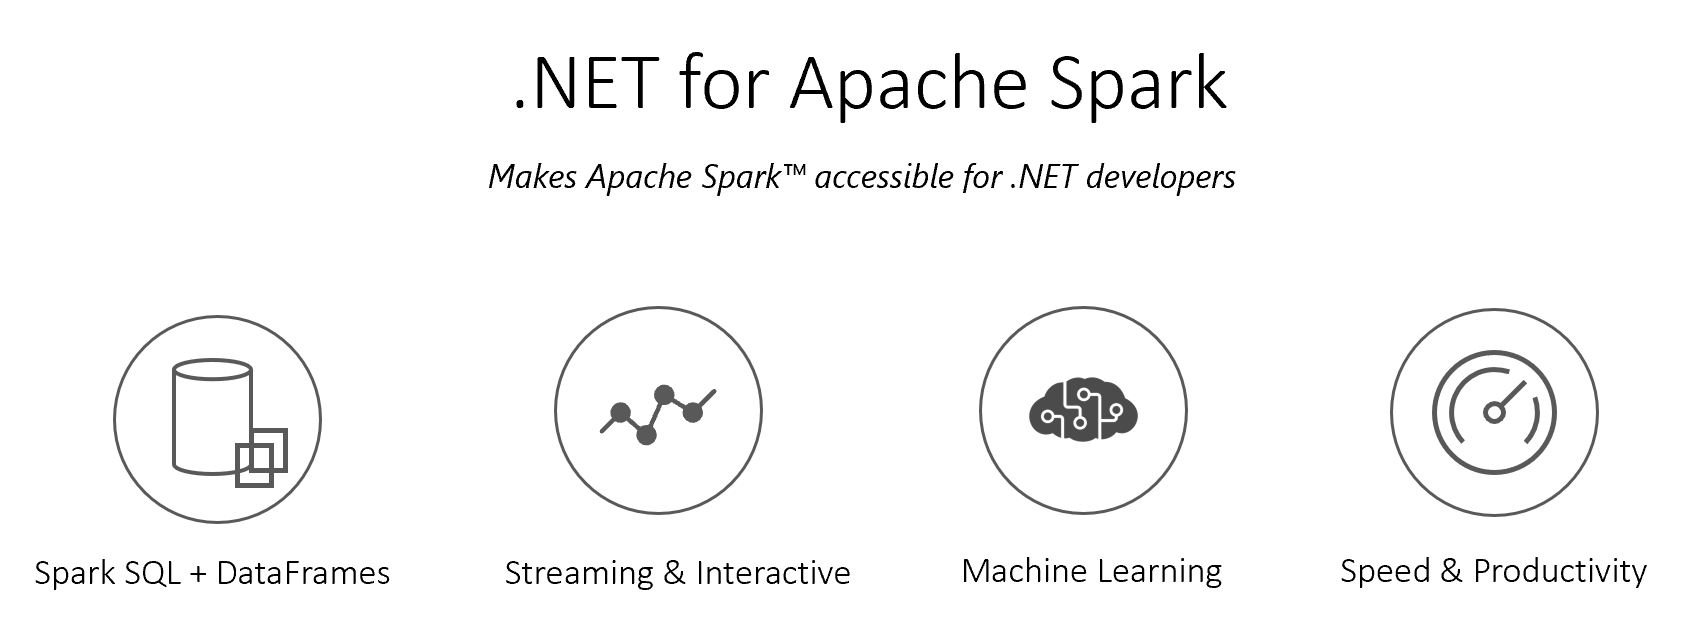 .NET for Apache Spark v1.0.0 Released